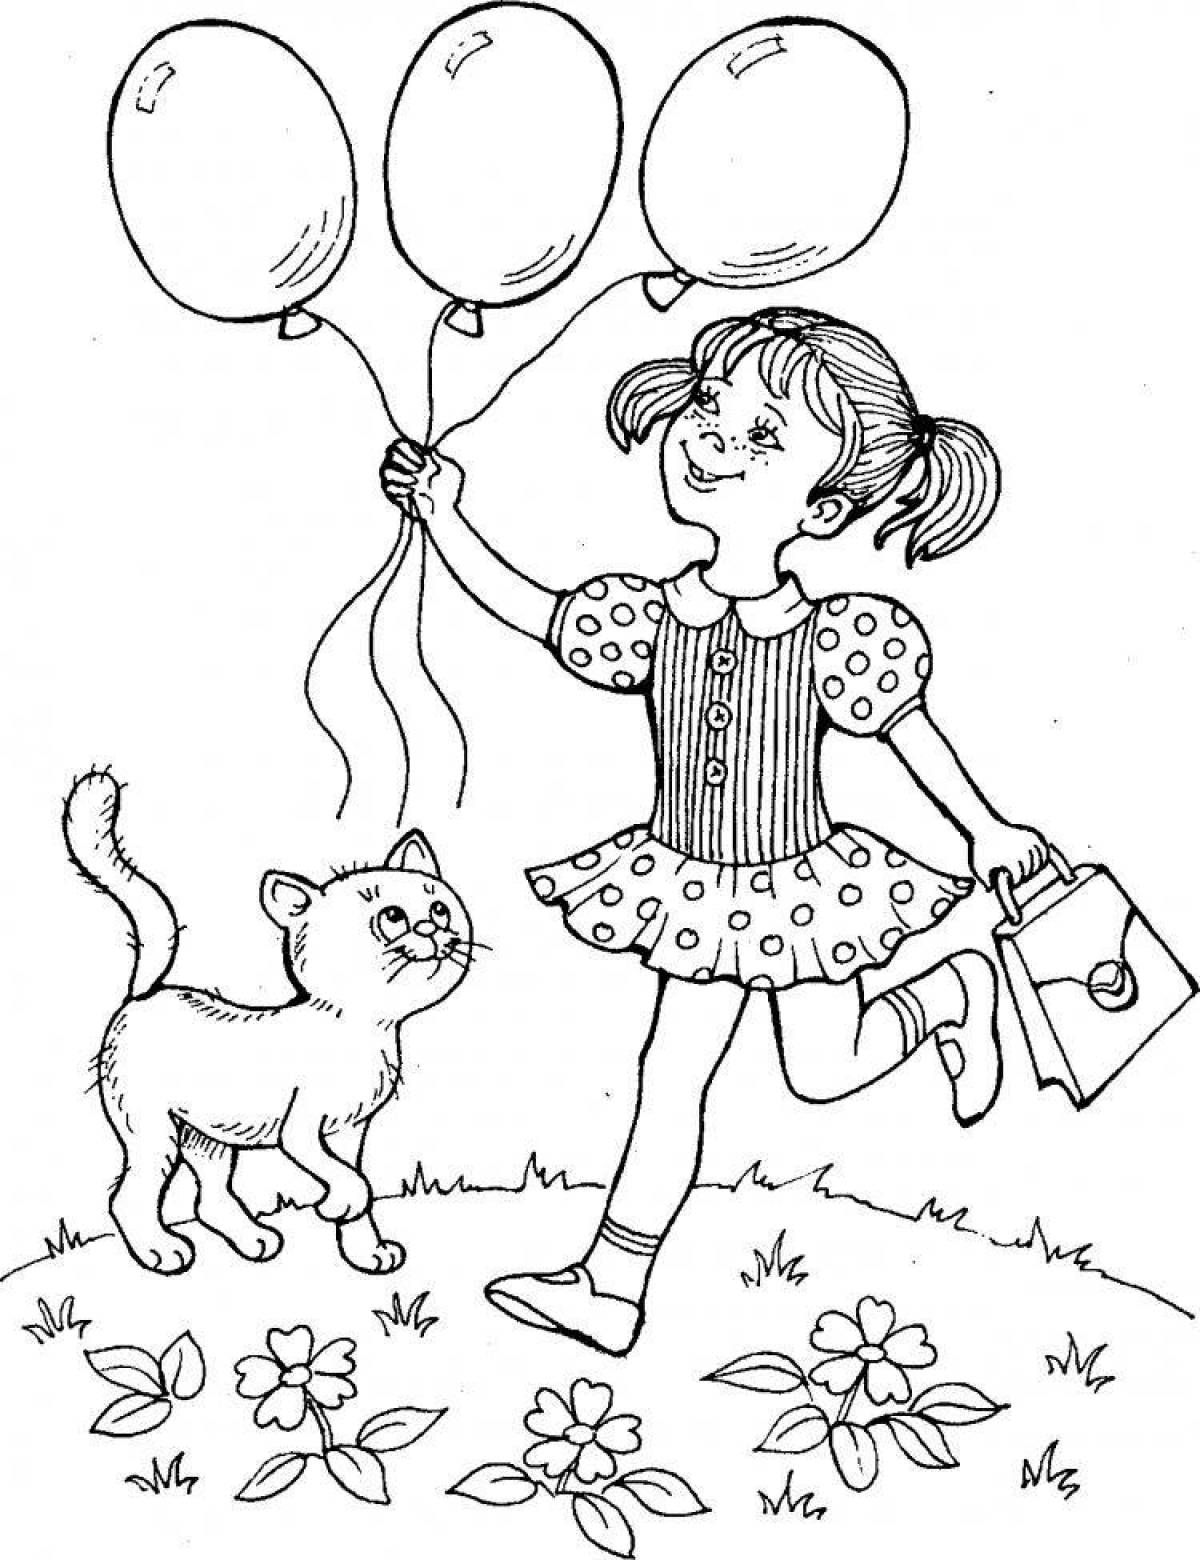 Удовлетворенная раскраска девушка с воздушными шарами